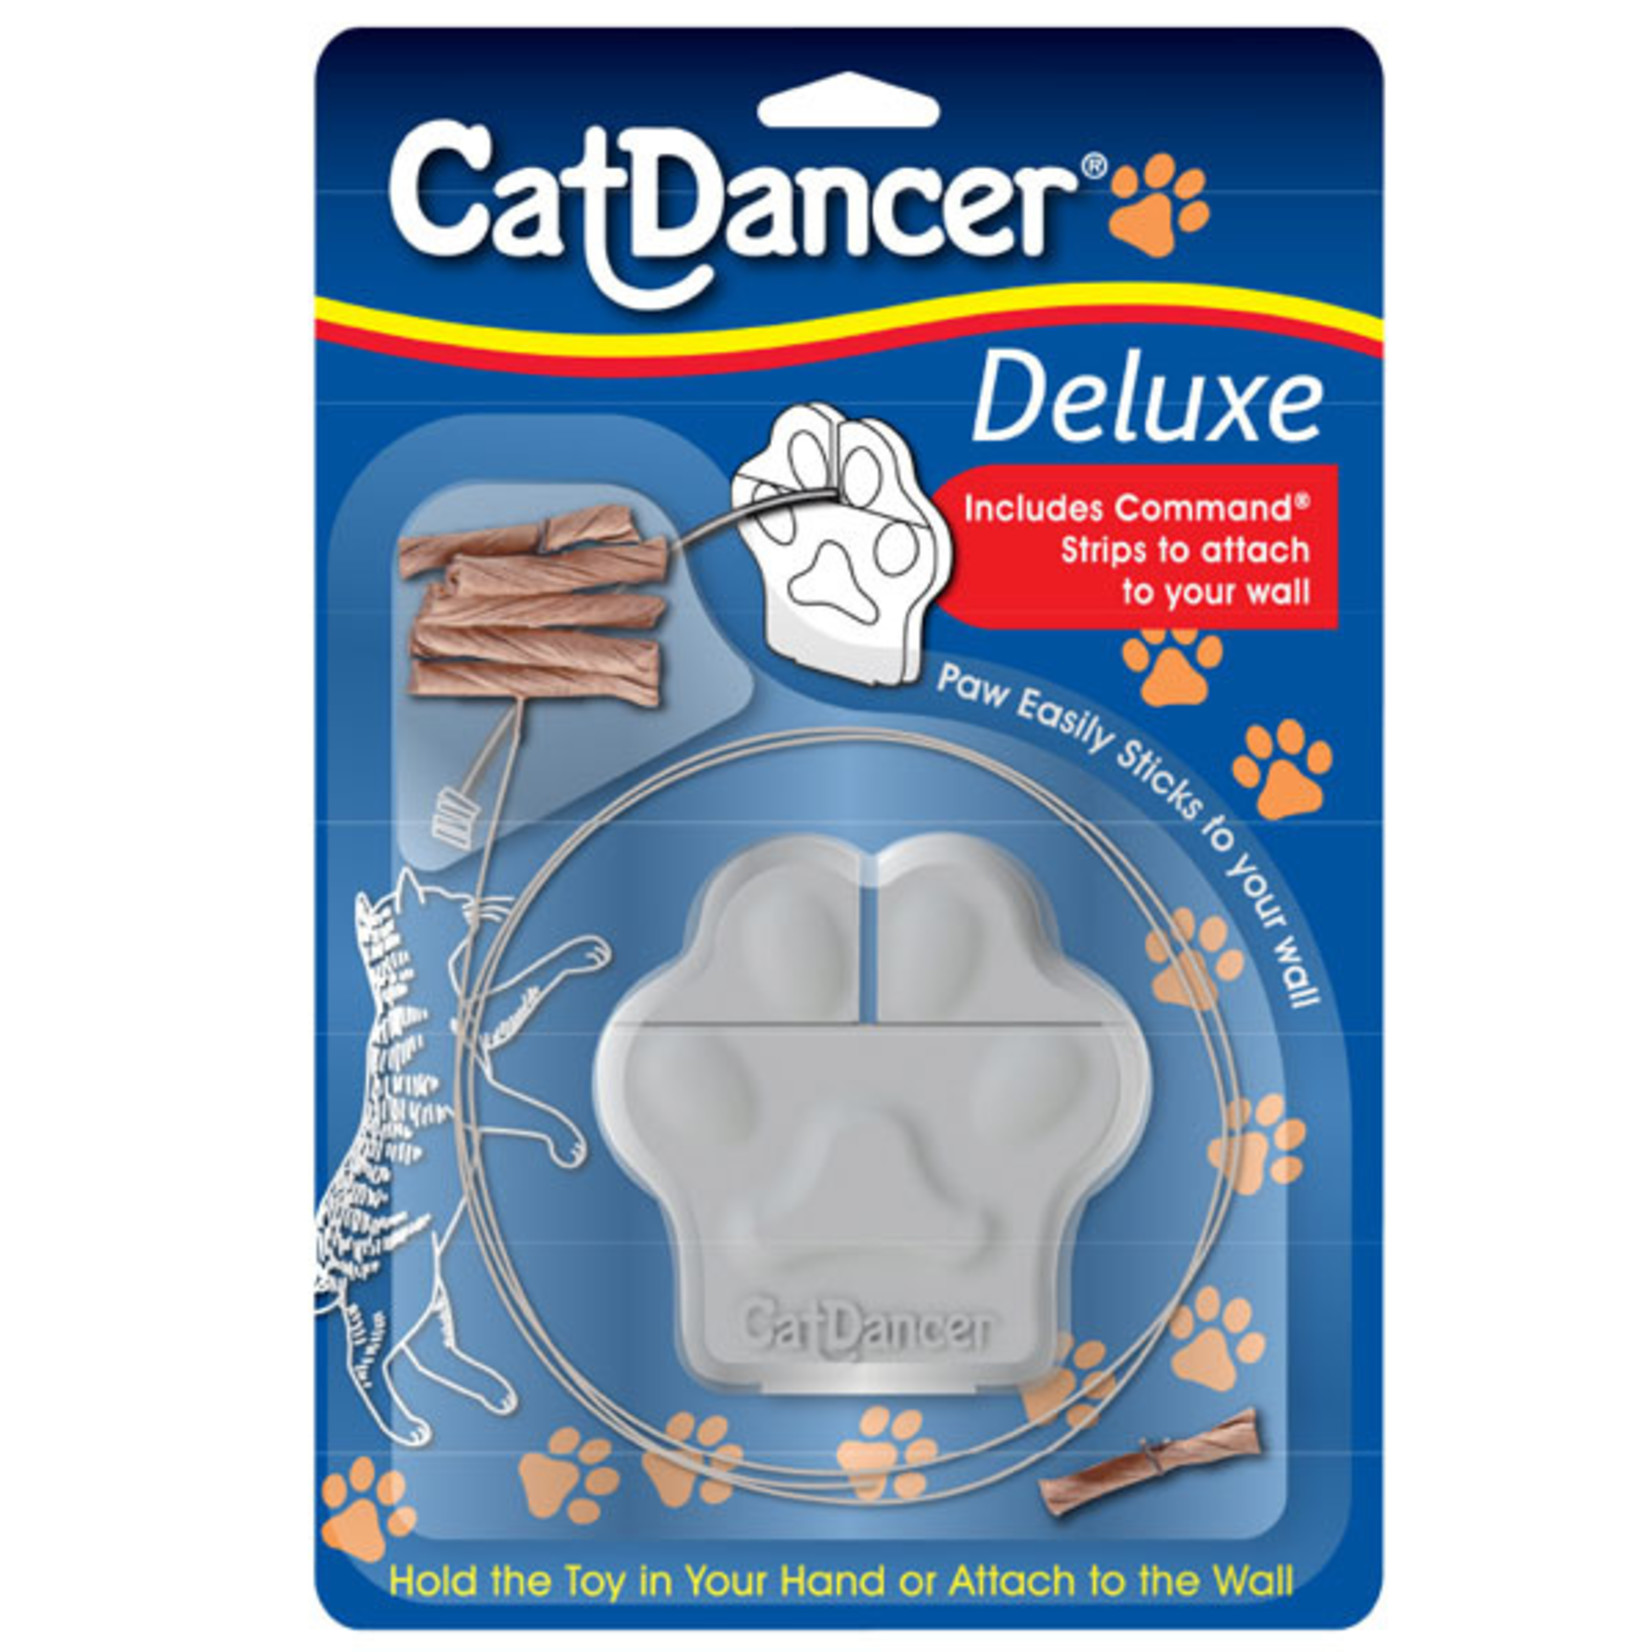 Cat Dancer Cat Dancer Deluxe Cat Toy